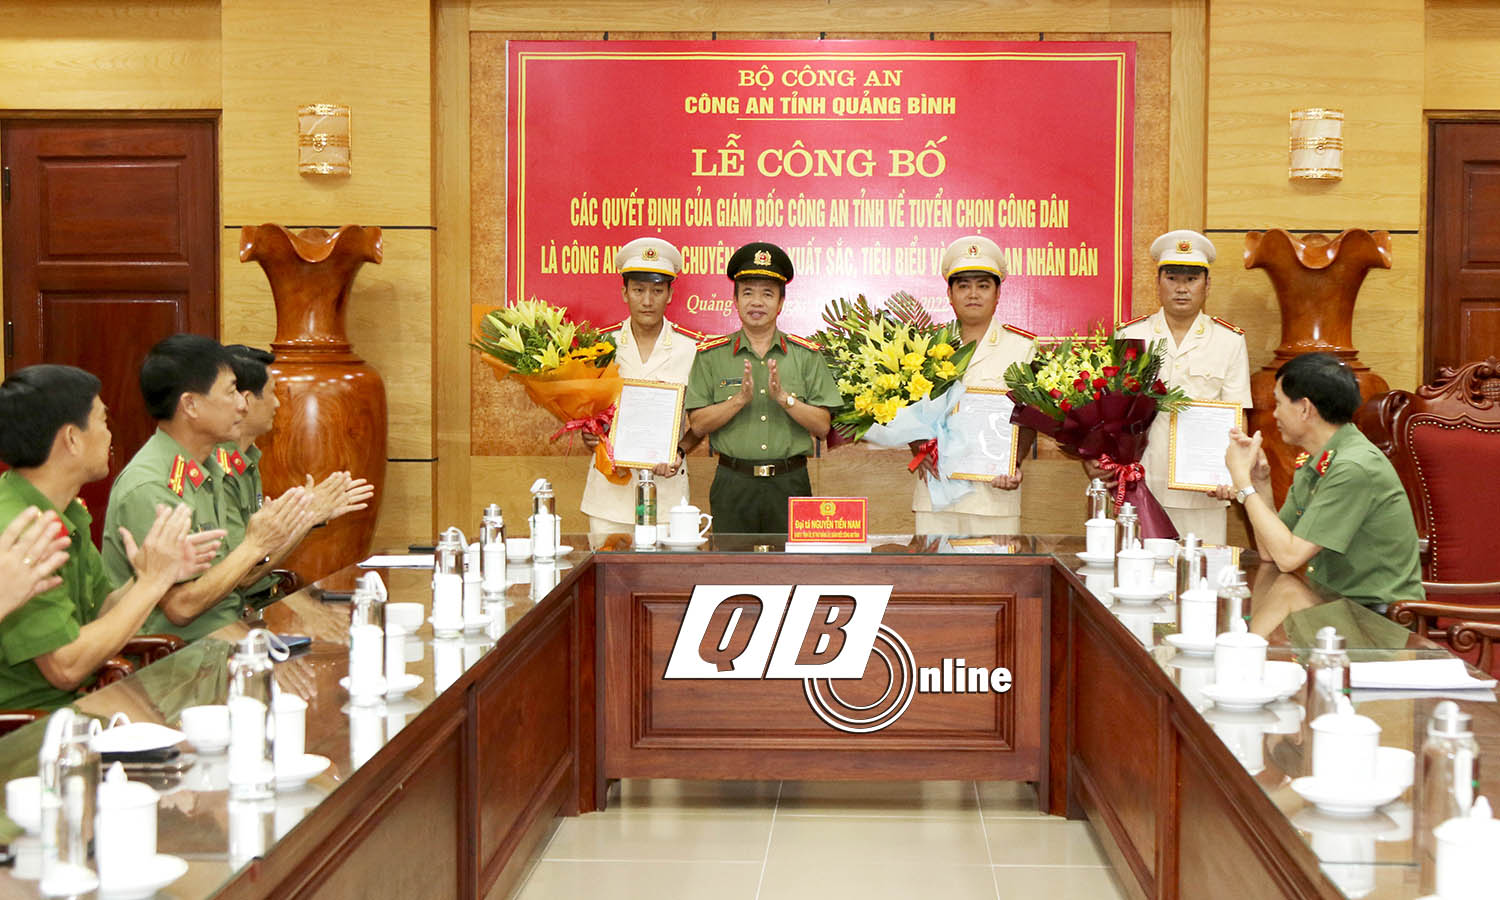 Đồng chí Đại tá, Giám đốc Công an tỉnh Nguyễn Tiến Nam trao quyết định tuyển dụng công an xã bán chuyên trách xuất sắc, tiêu biểu vào lực lượng CAND.